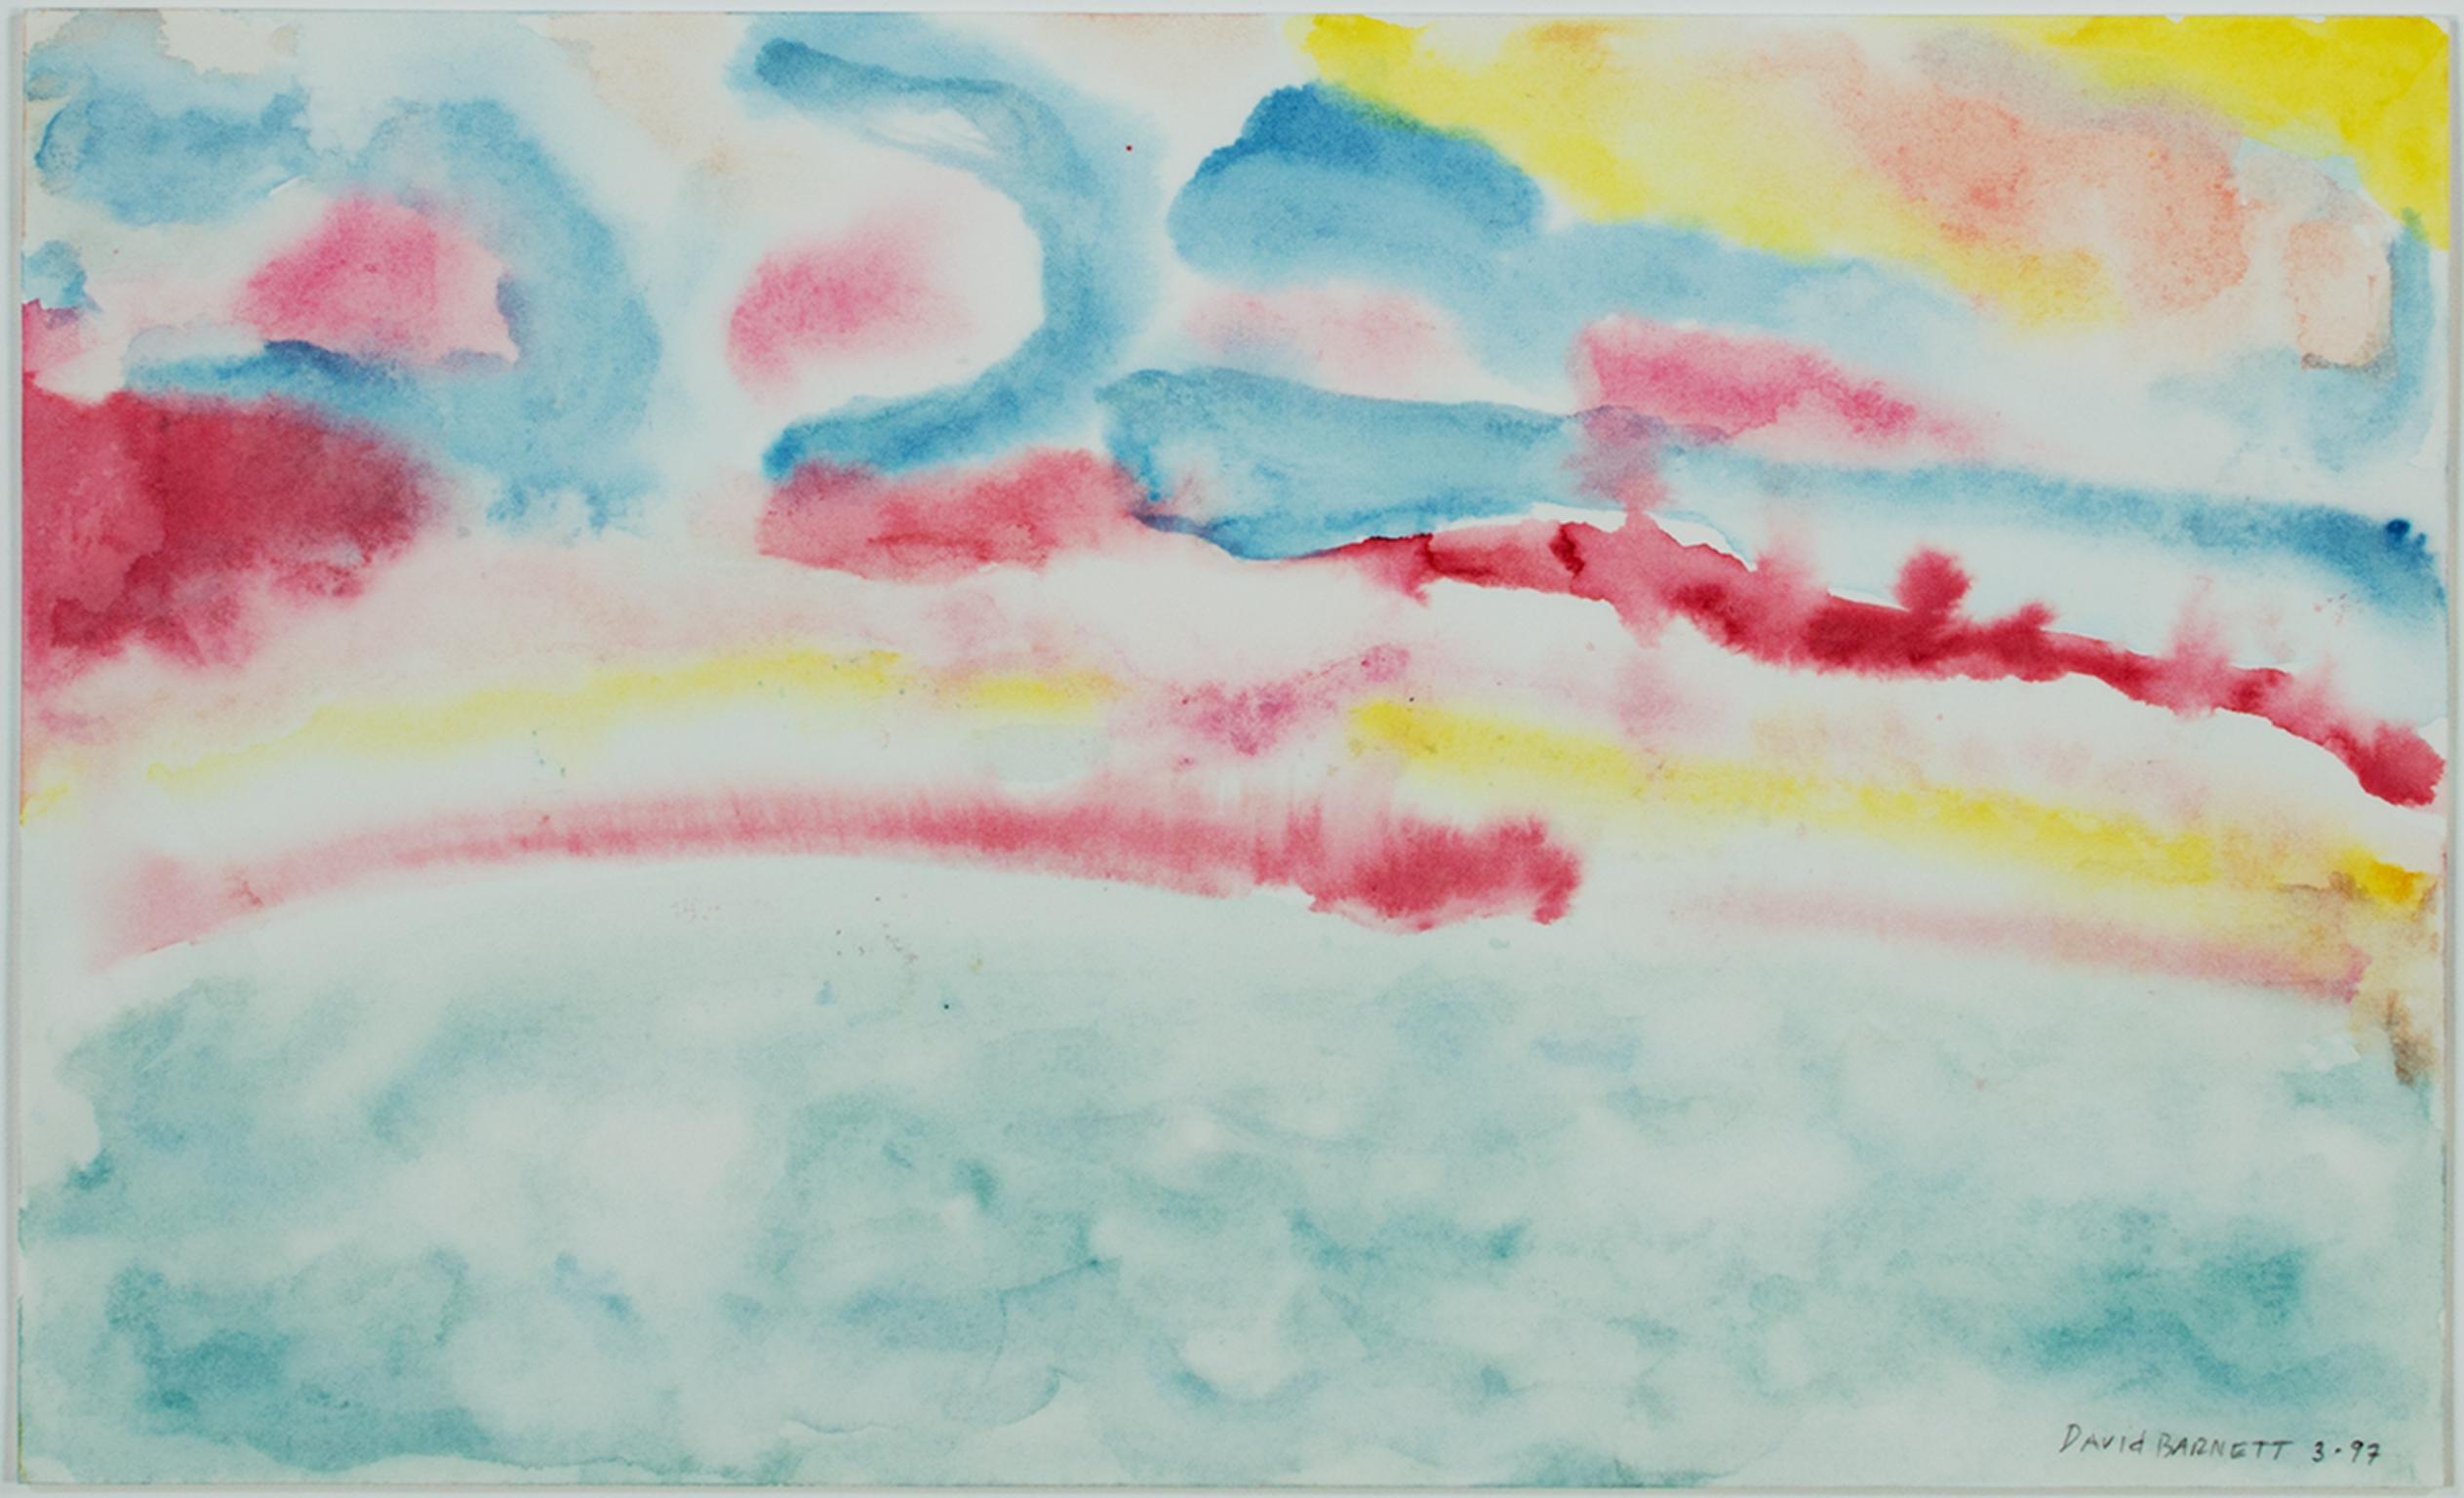 "Beaver Lake Sunrise IV" ist ein Original-Aquarell auf Papier von David Barnett, signiert in der unteren rechten Ecke. Dieses abstrakte Werk zeigt helle Streifen von Primärfarben, die den Himmel über einem hellblau-grünen See darstellen. Der